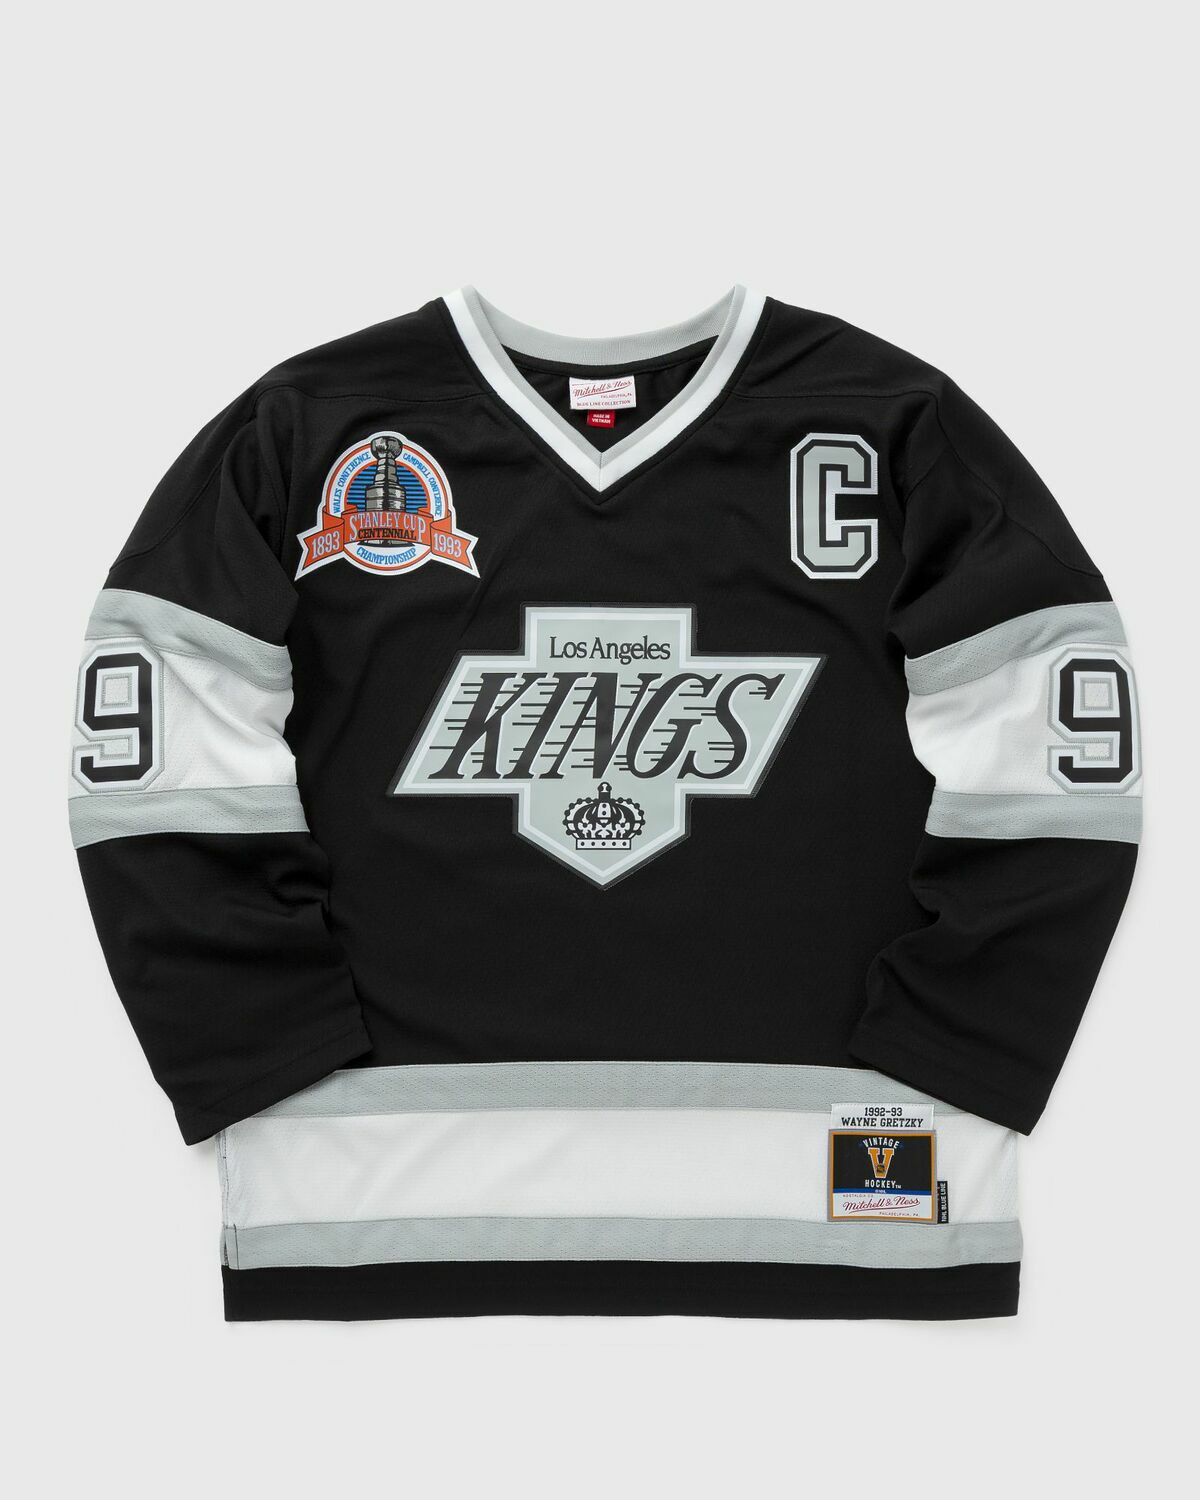 Los Angeles Kings #99 Wayne Gretzky Purple Jersey on sale,for